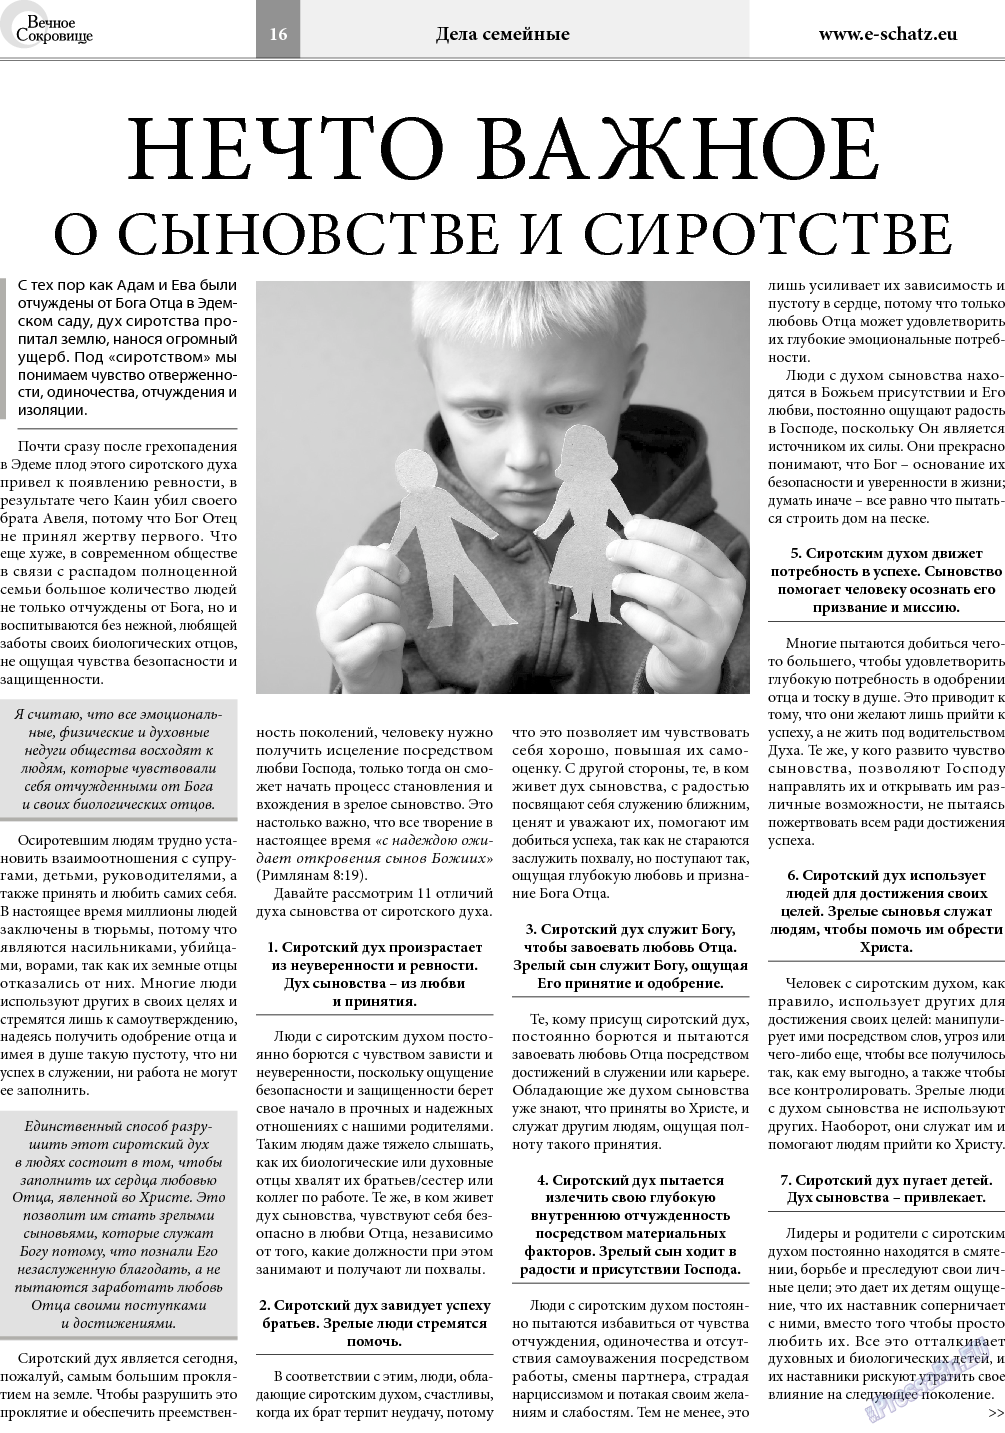 Вечное сокровище, газета. 2018 №2 стр.16